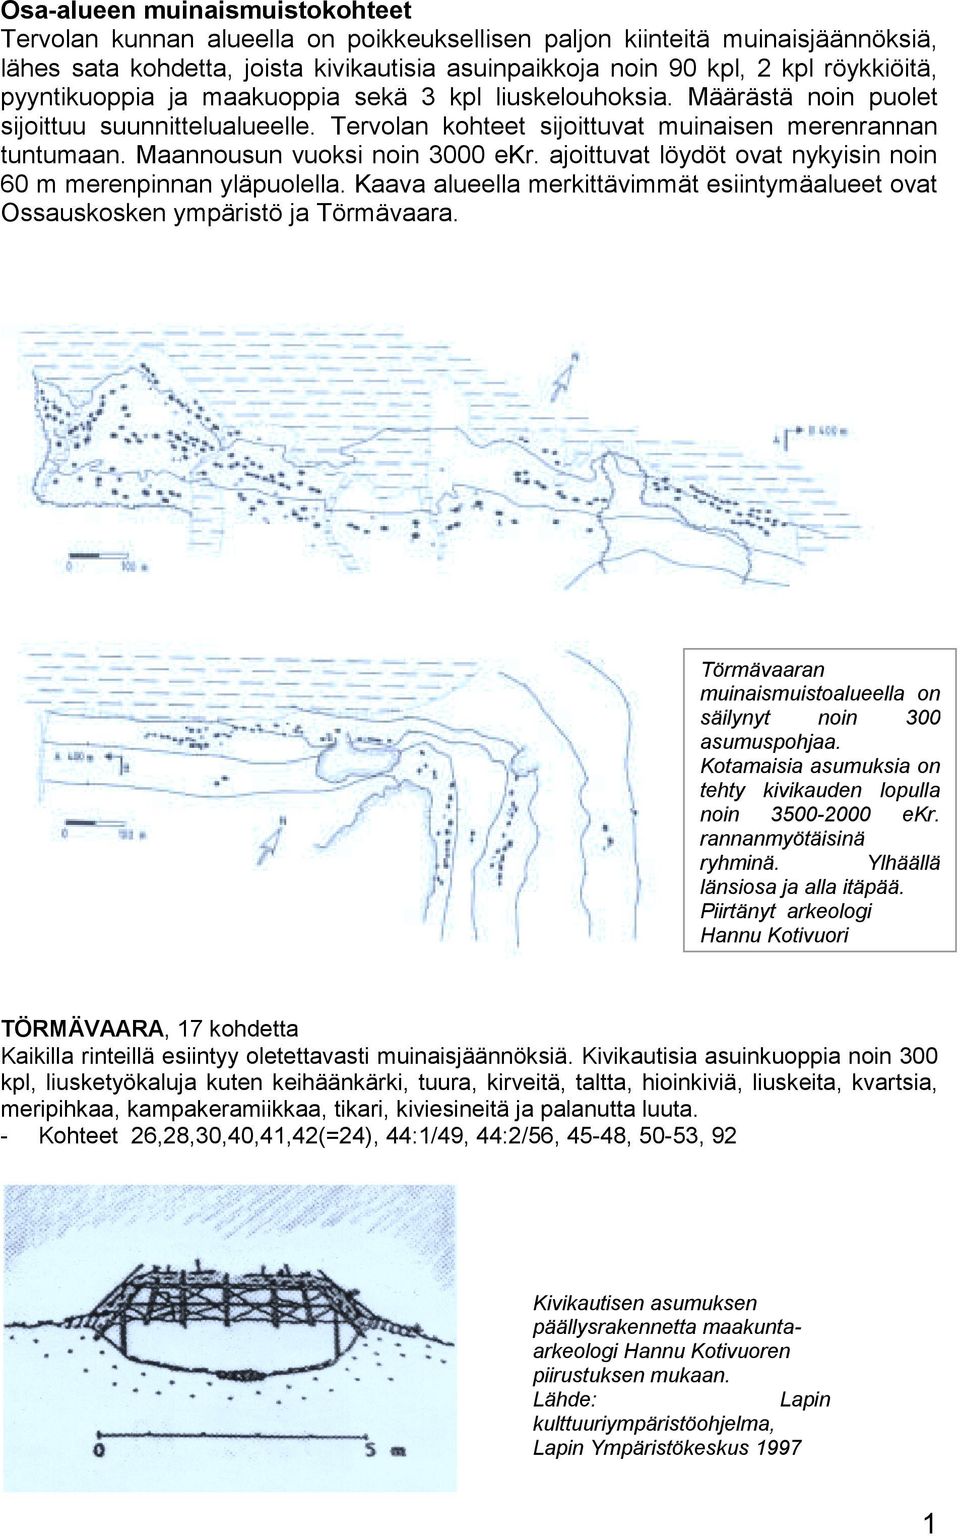 Maannousun vuoksi noin 3000 ekr. ajoittuvat löydöt ovat nykyisin noin 60 m merenpinnan yläpuolella. Kaava alueella merkittävimmät esiintymäalueet ovat Ossauskosken ympäristö ja Törmävaara.